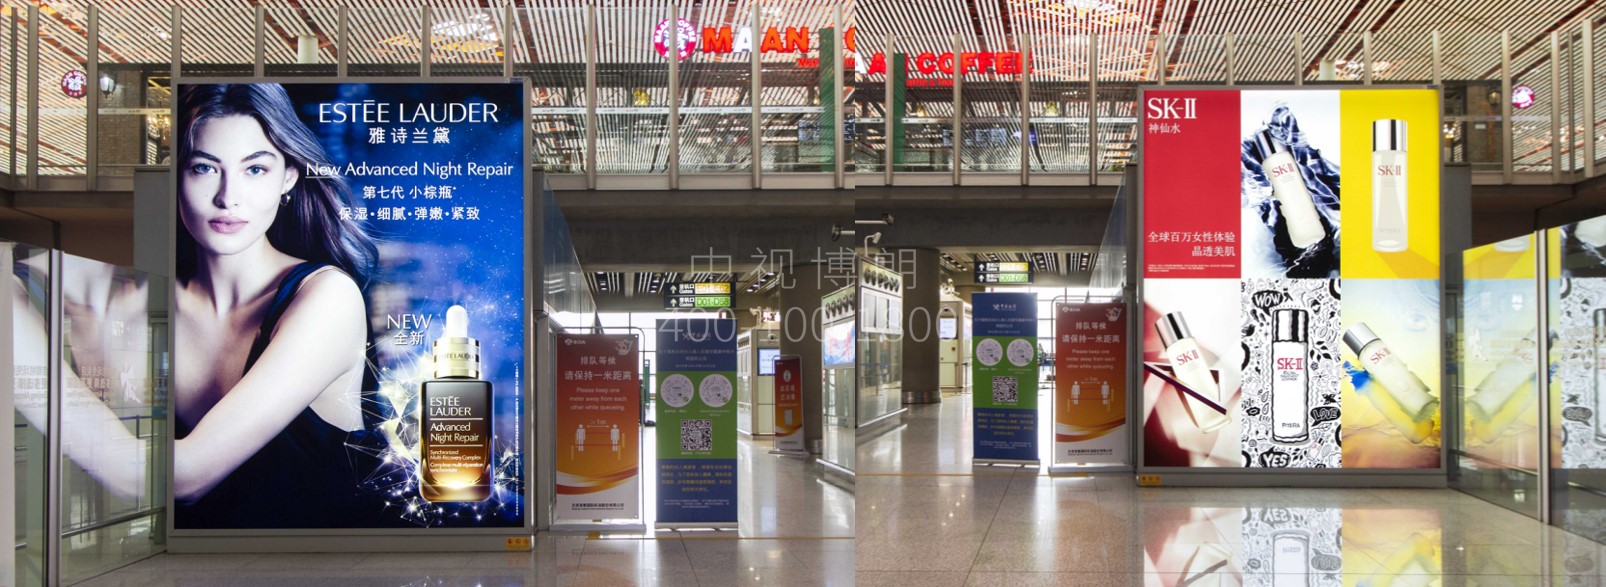 北京首都机场广告-T3国际出发捷运站台2块灯箱